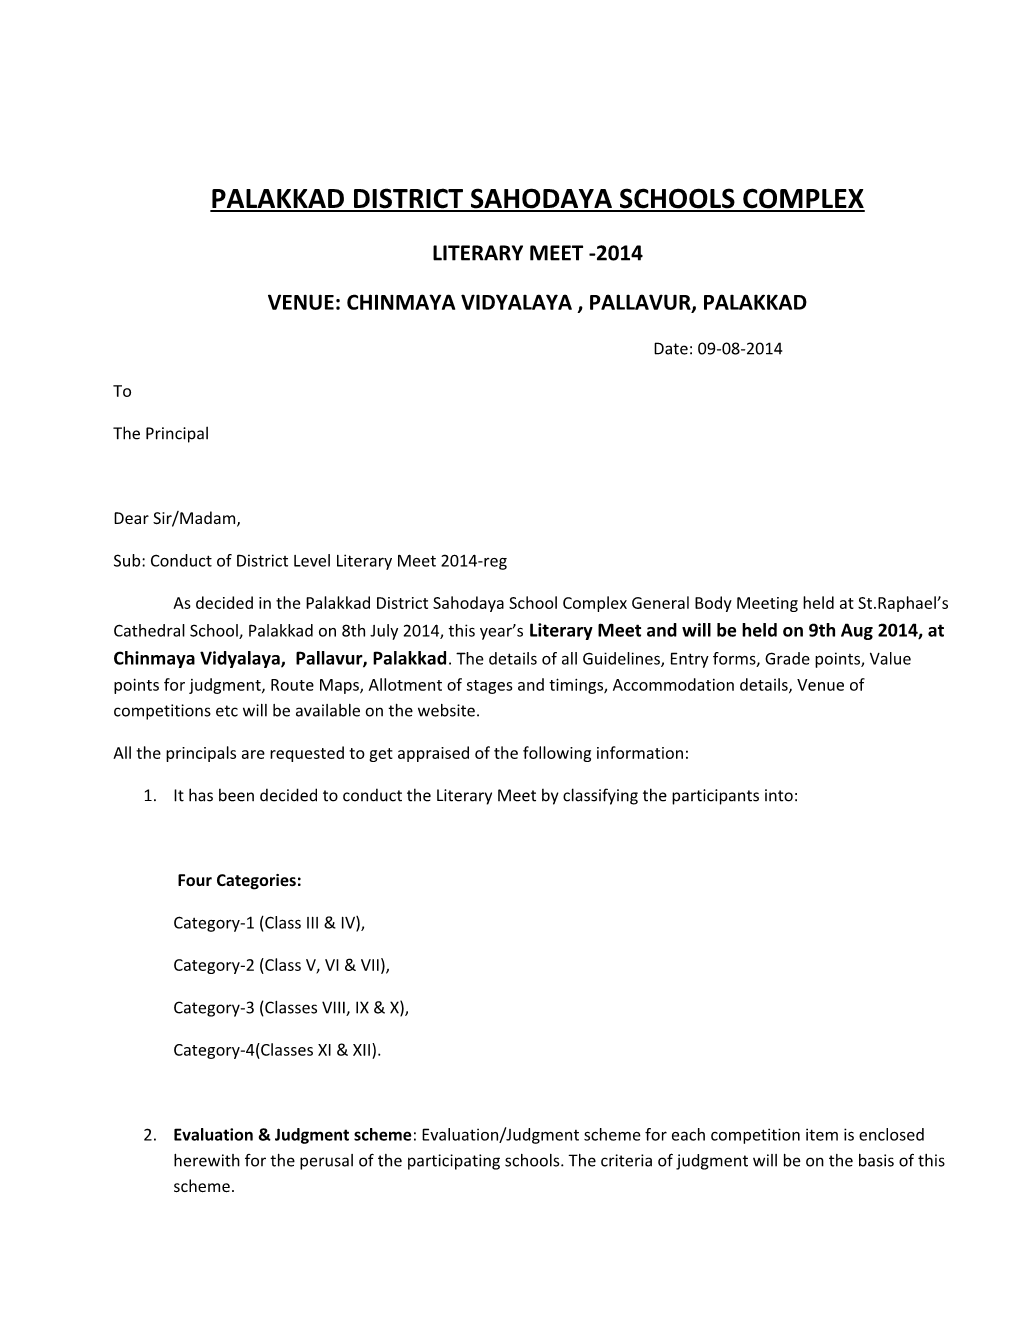 Palakkad District Sahodaya Schools Complex